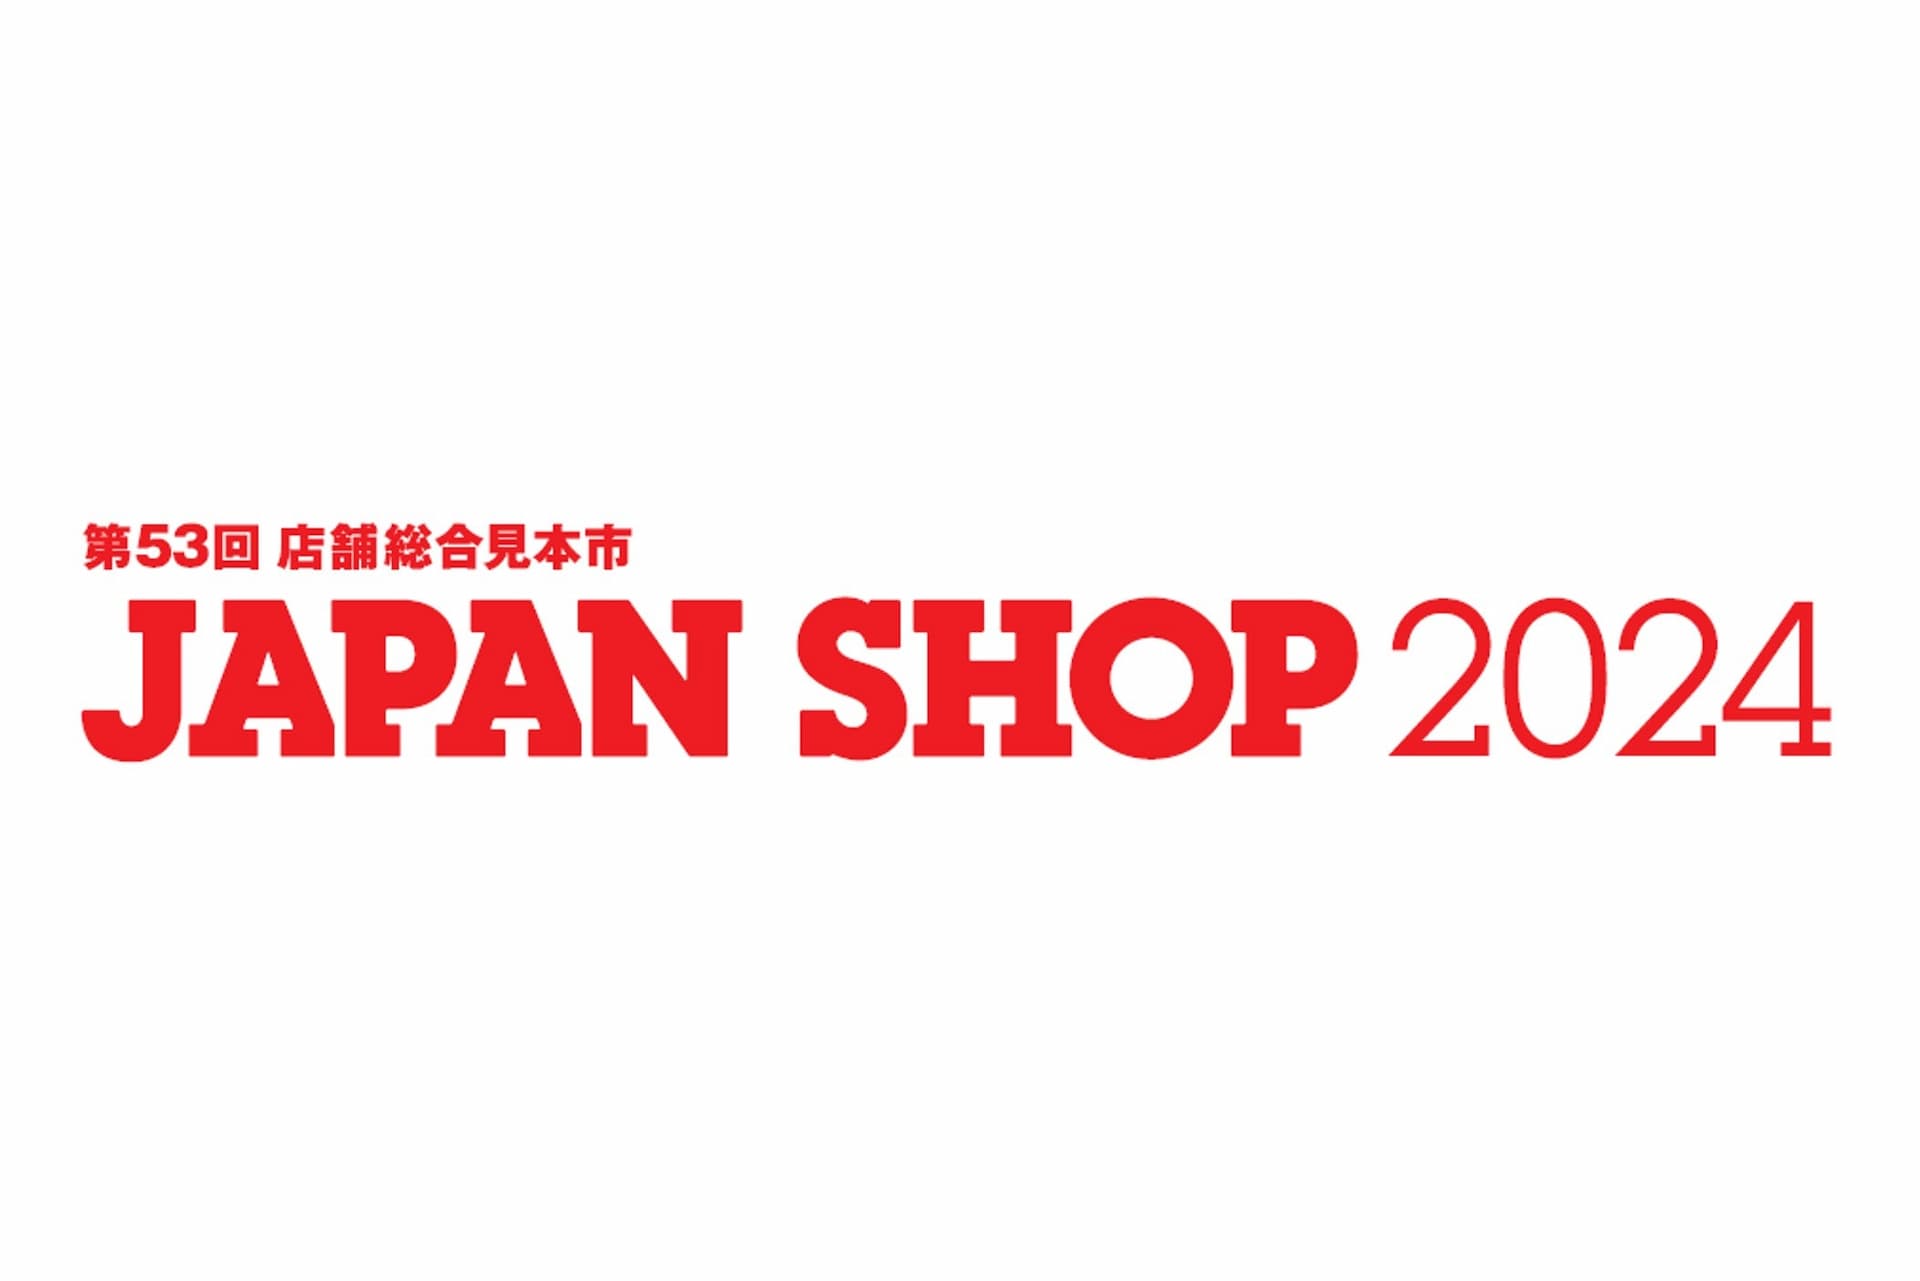 第53回店舗総合見本市「JAPAN SHOP 2024」に当社クリエイターが登壇・出展します